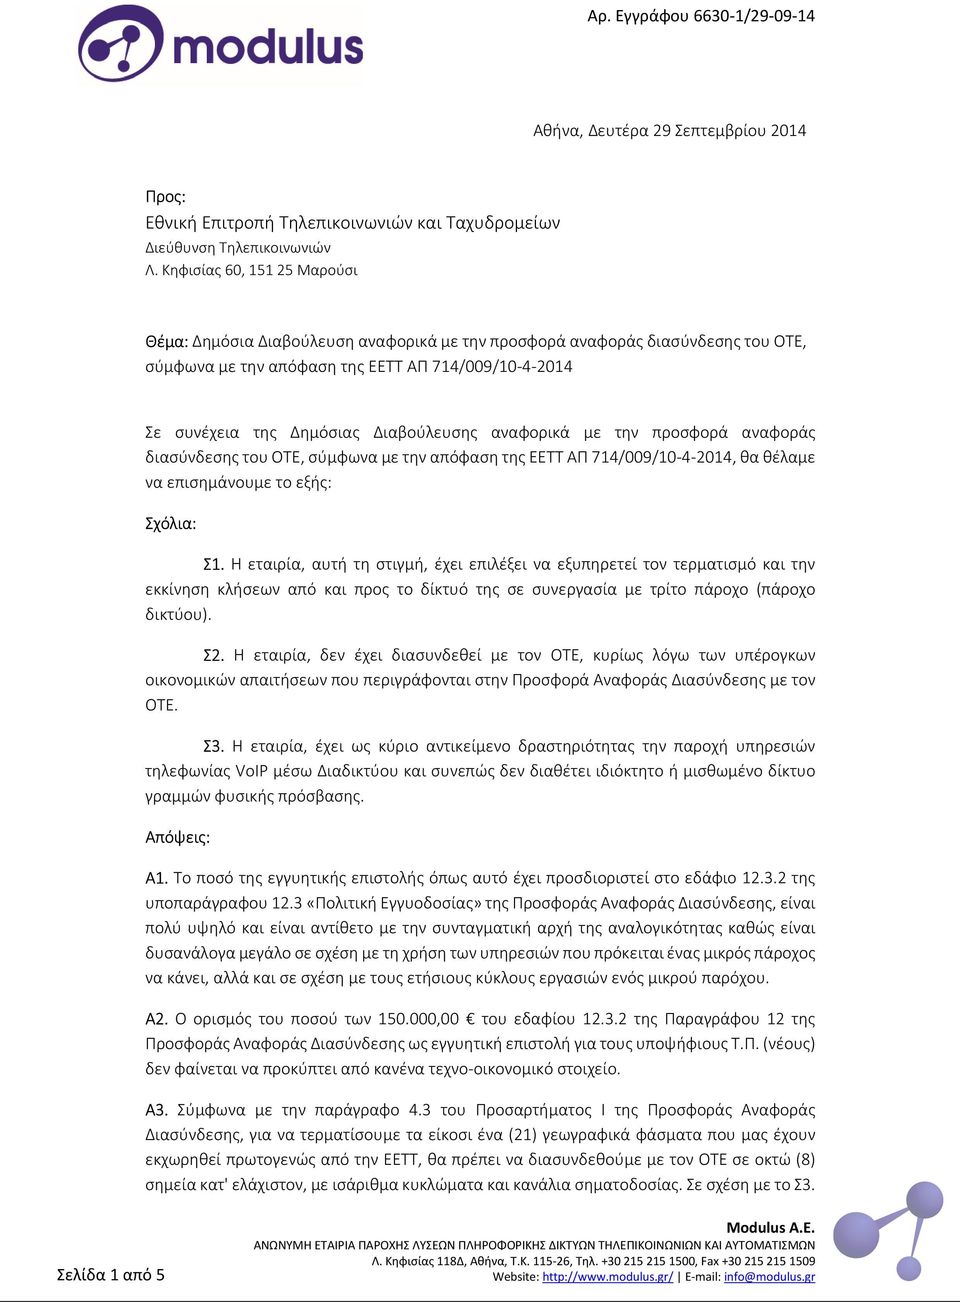 Διαβούλευσης αναφορικά με την προσφορά αναφοράς διασύνδεσης του ΟΤΕ, σύμφωνα με την απόφαση της ΕΕΤΤ ΑΠ 714/009/10-4-2014, θα θέλαμε να επισημάνουμε το εξής: Σχόλια: Σ1.